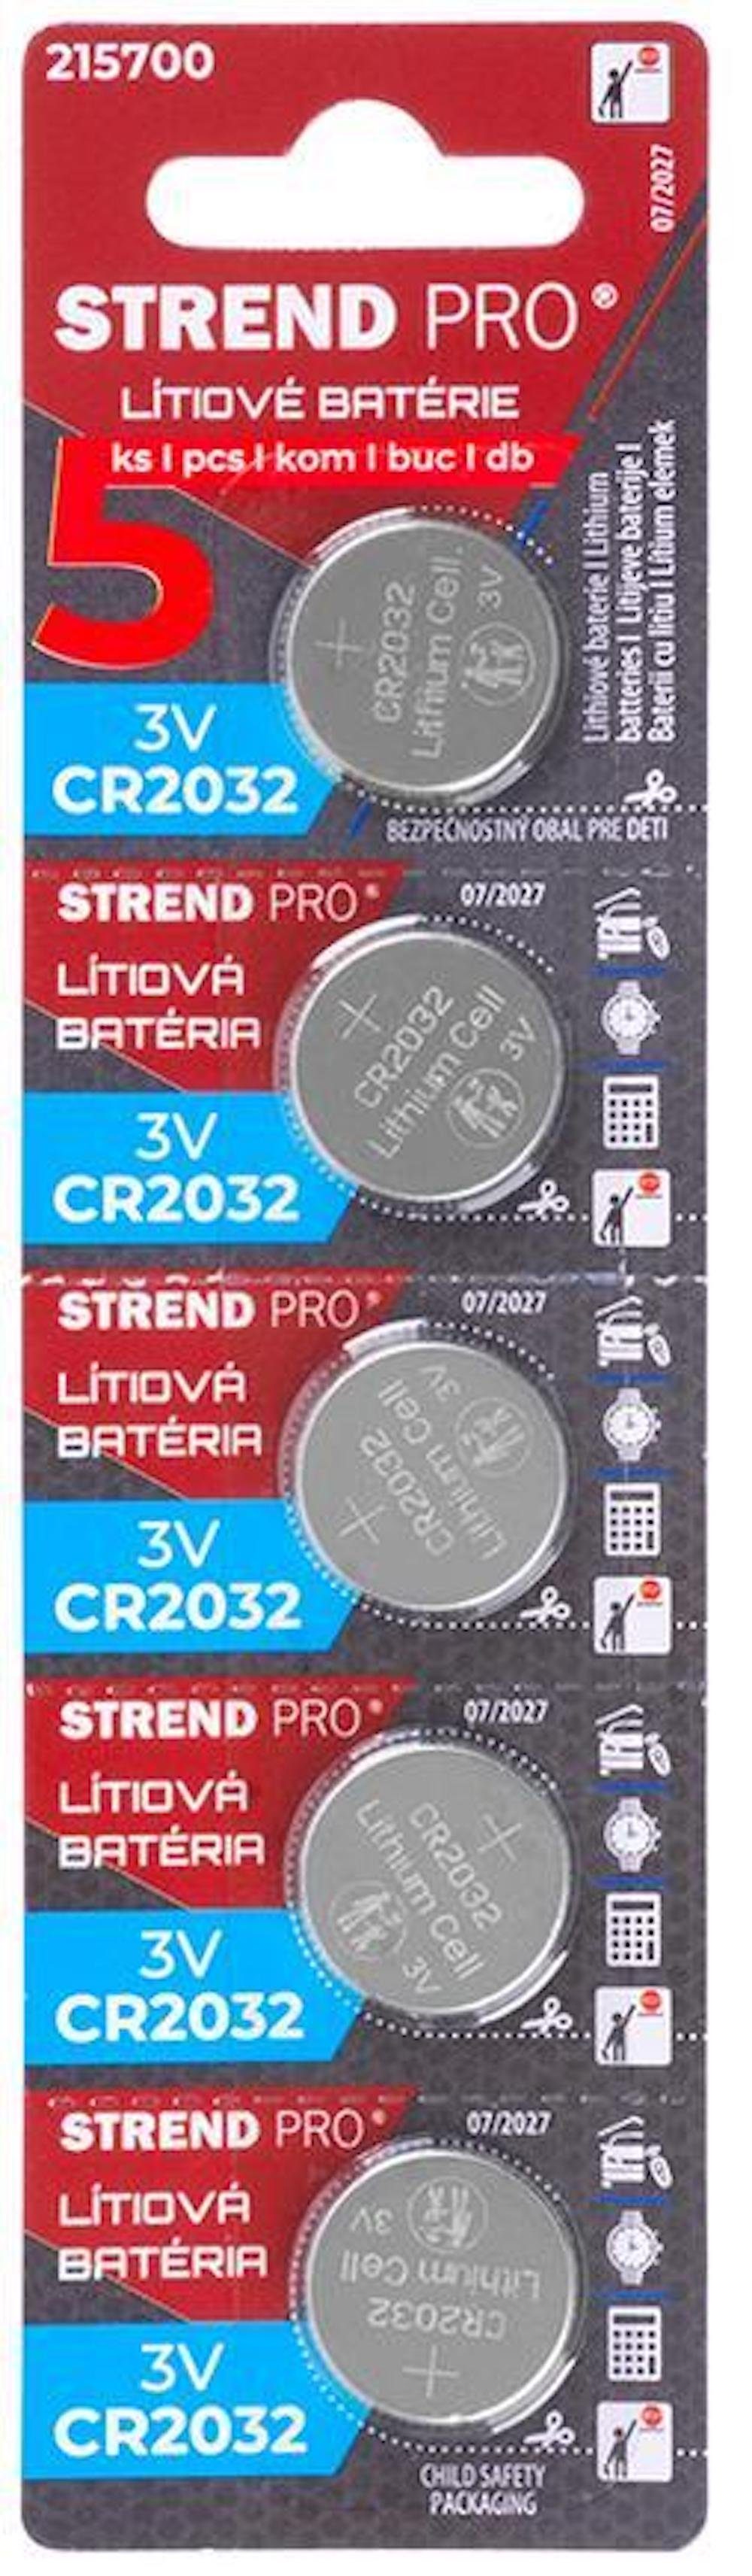 Batterien, Elektrowerkzeug-Set CR2032 Stück, PROREGAL® Li-Mno2, 5